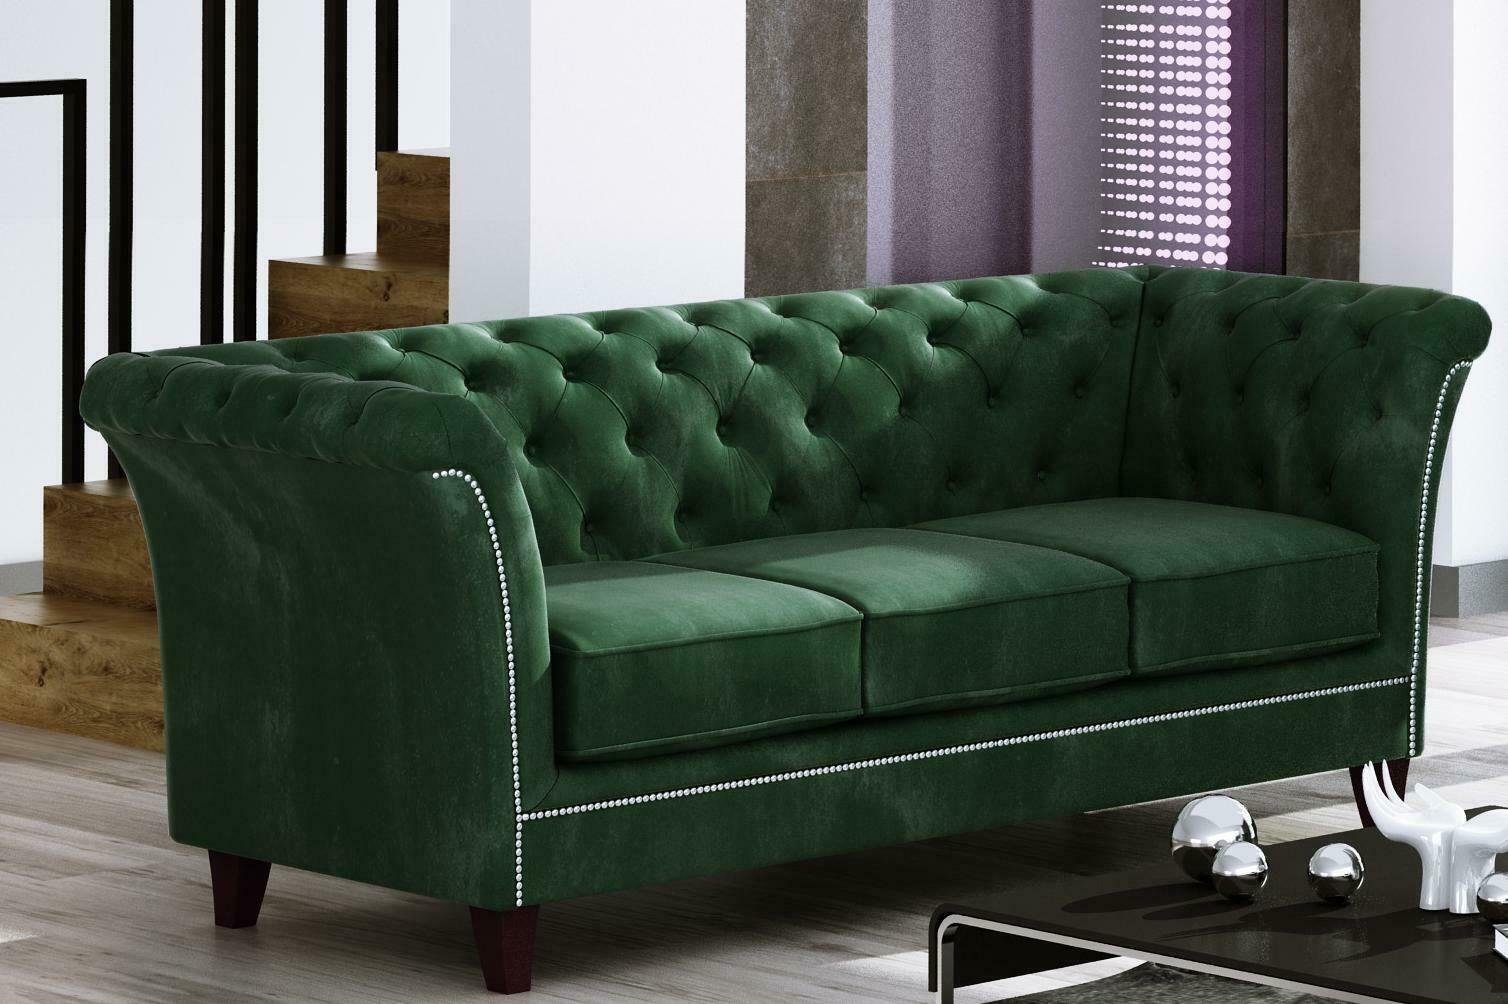 Neu, Möbel Europe Chesterfield Sofa JVmoebel Made Edel Grüner Luxus in Dreisitzer 3-Sitzer Couch